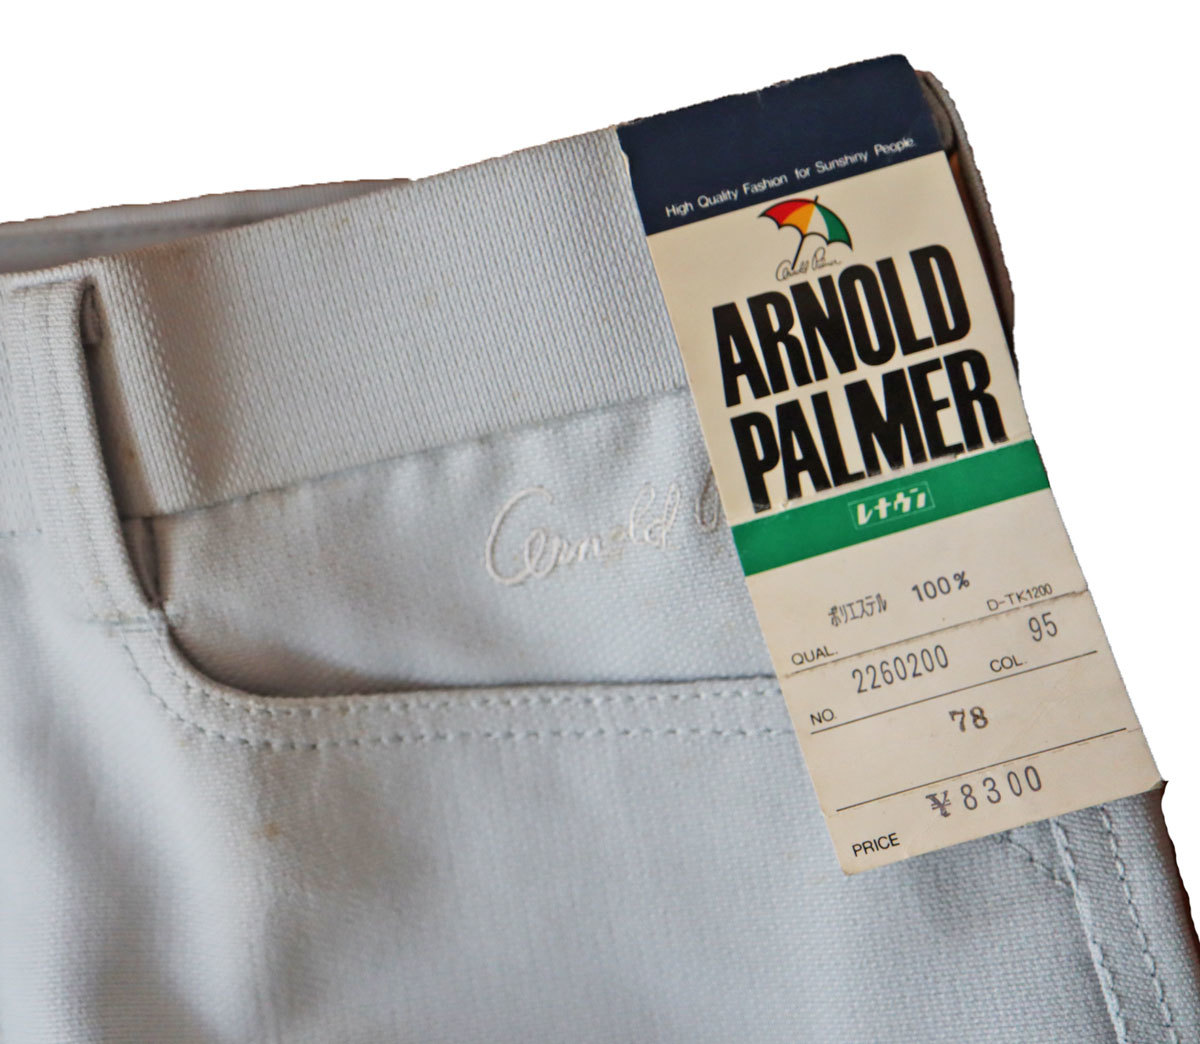 rmp1560-78 Showa Retro Arnold Palmer джентльмен одежда мужской слаксы брюки низ весна осень талия 78 серый .. есть новый старый товар 